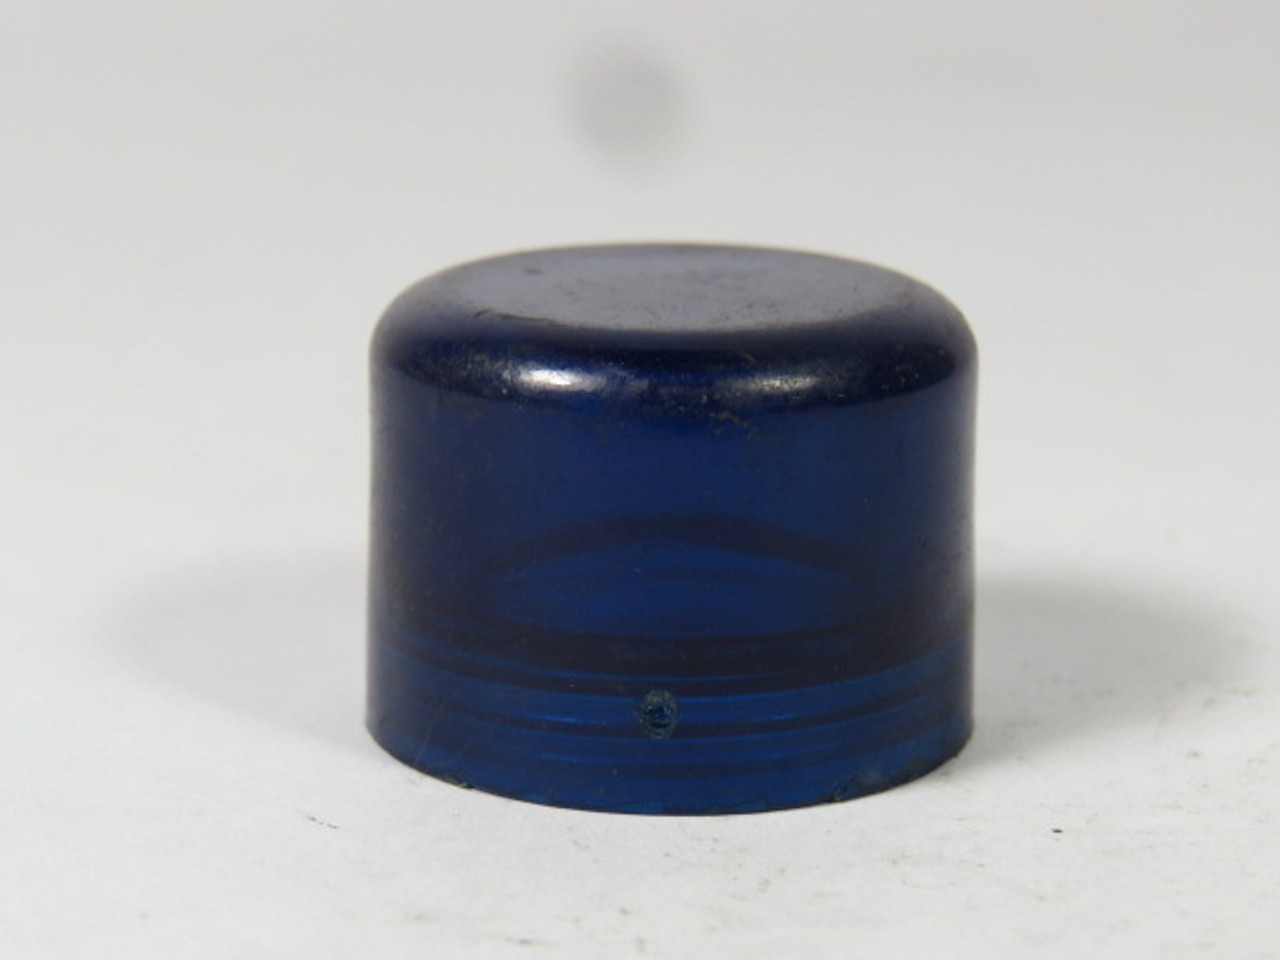 Allen-Bradley 800T-N43 Push Button/Pilot Light Cap Blue USED